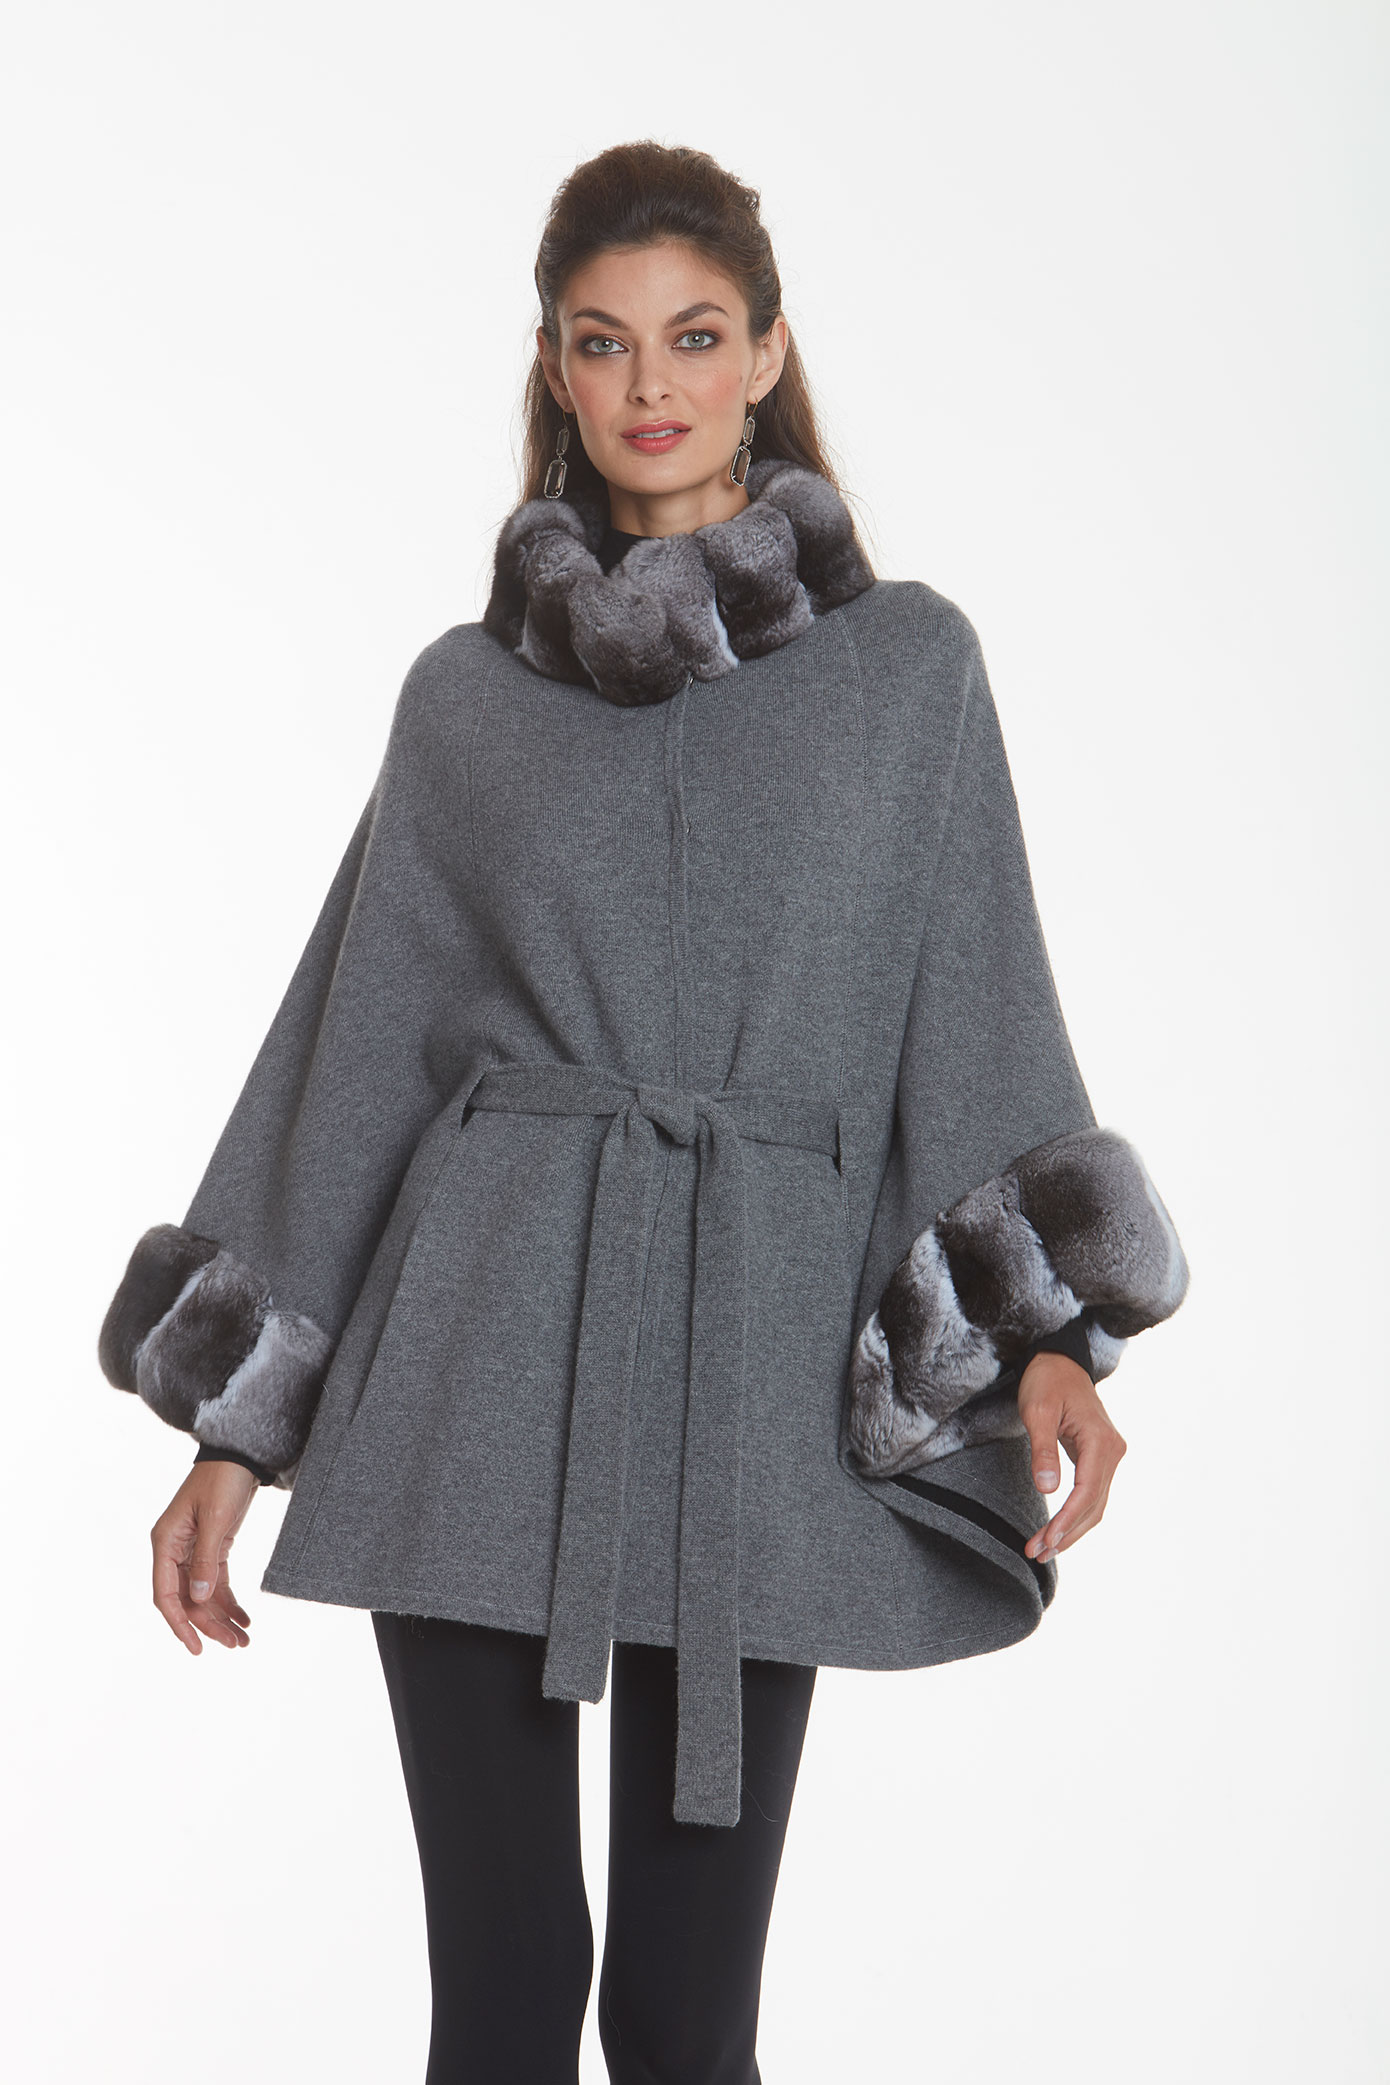 Cashmere and Chinchilla Cape | Madison Avenue Mall Furs